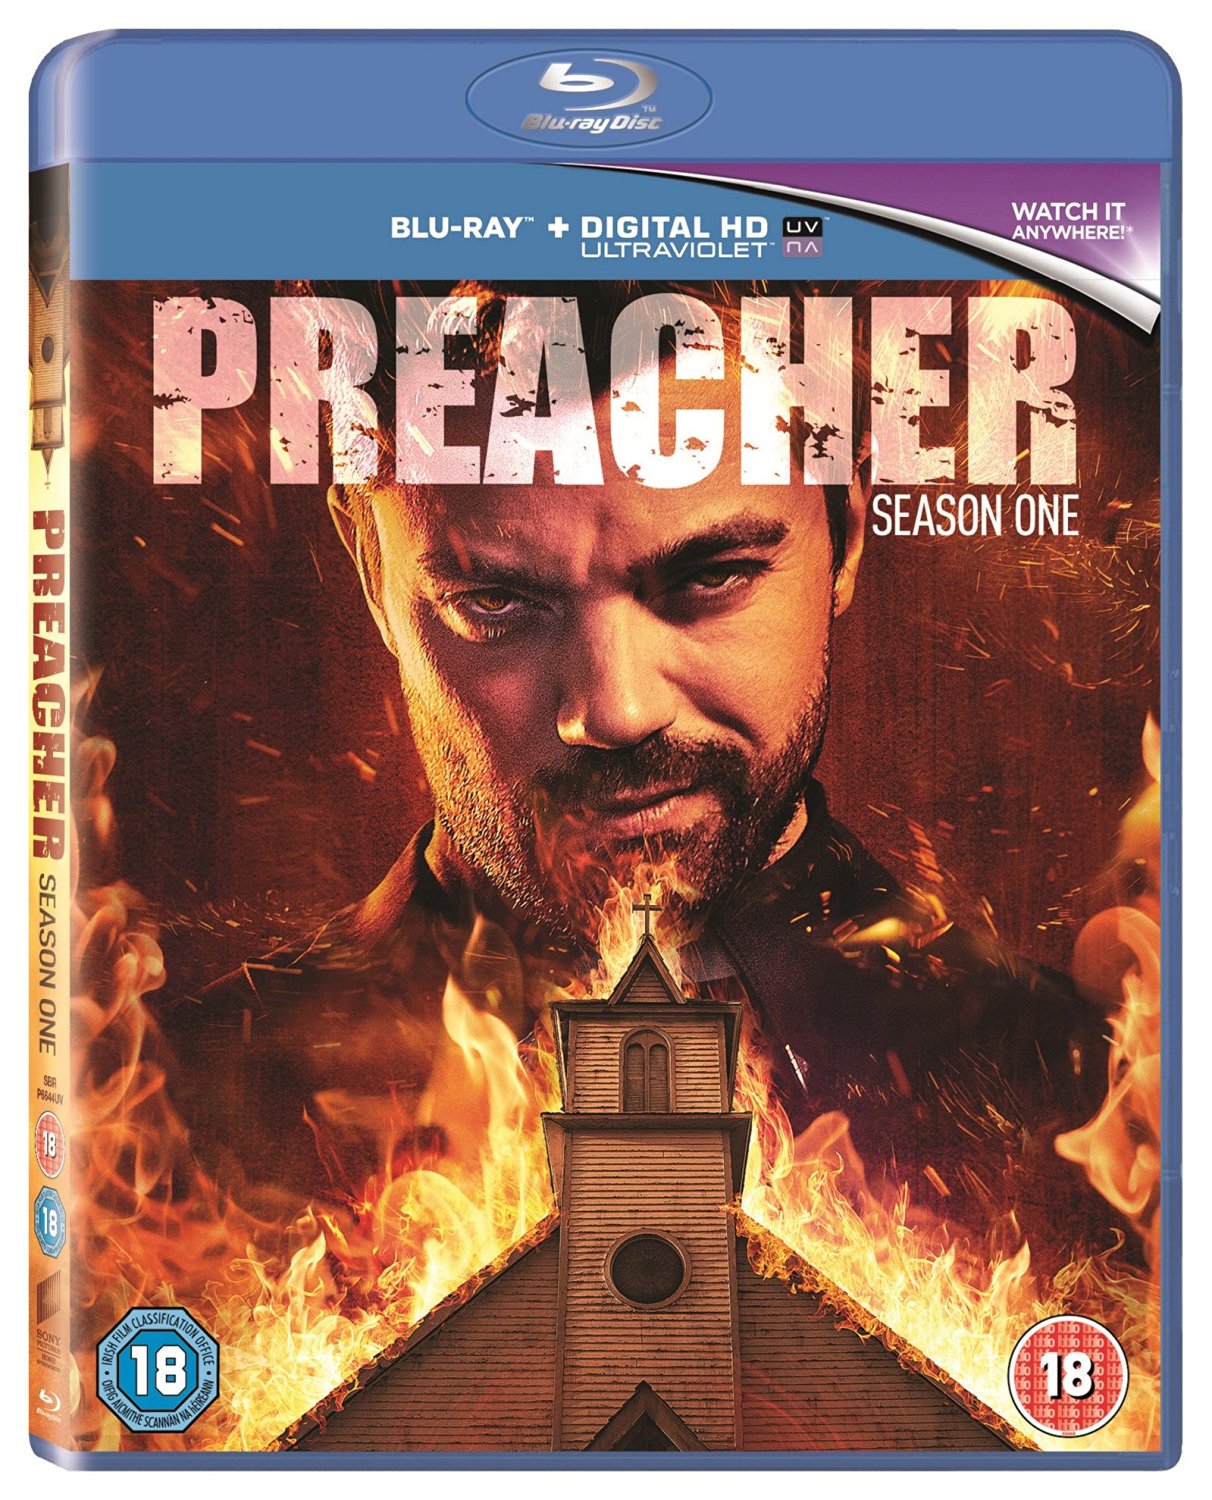 Preacher Season 1 Blu-ray review